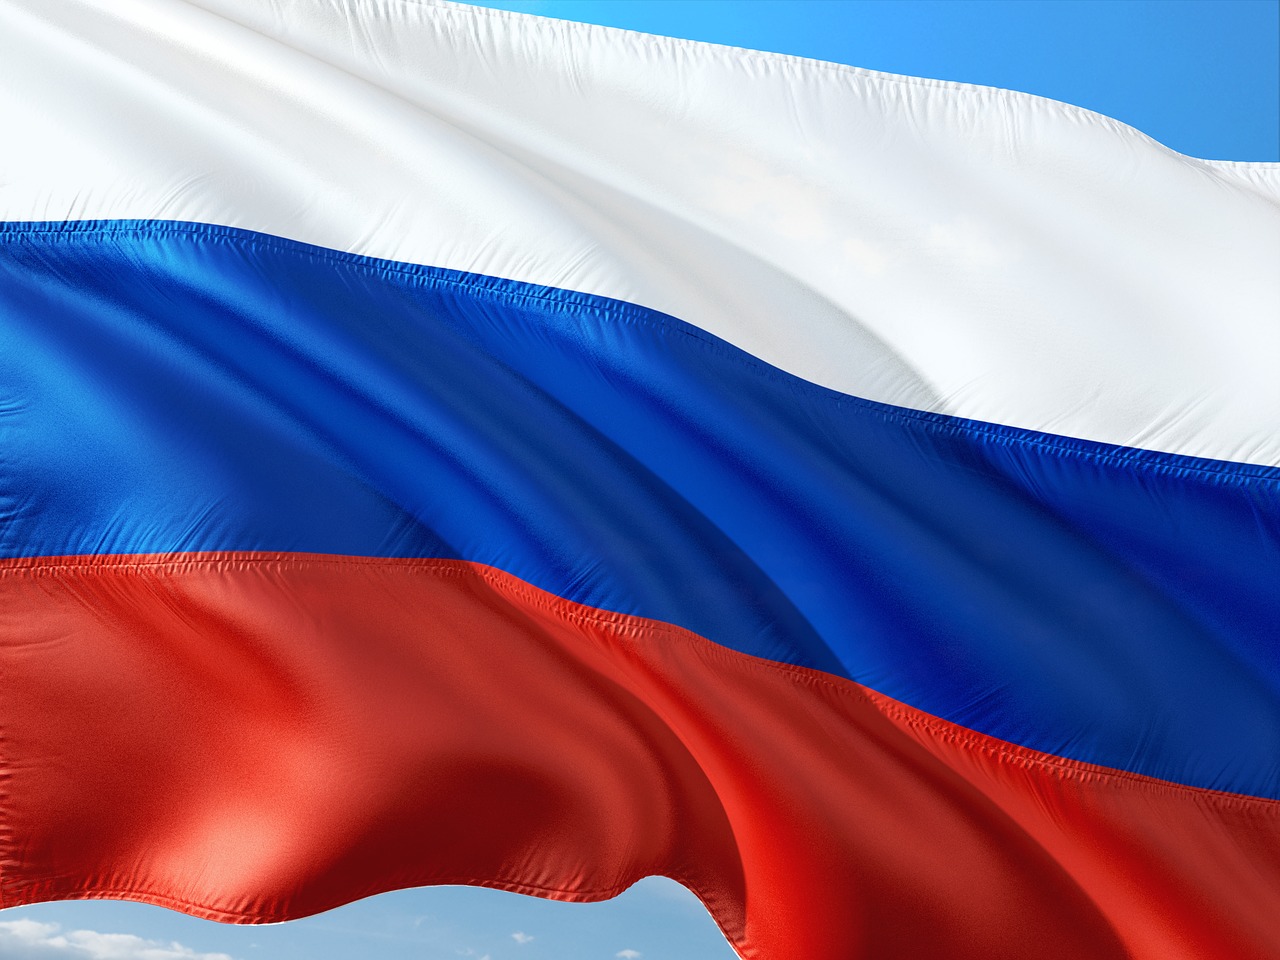 Orosz e-kereskedelem: 22 százalékos növekedés